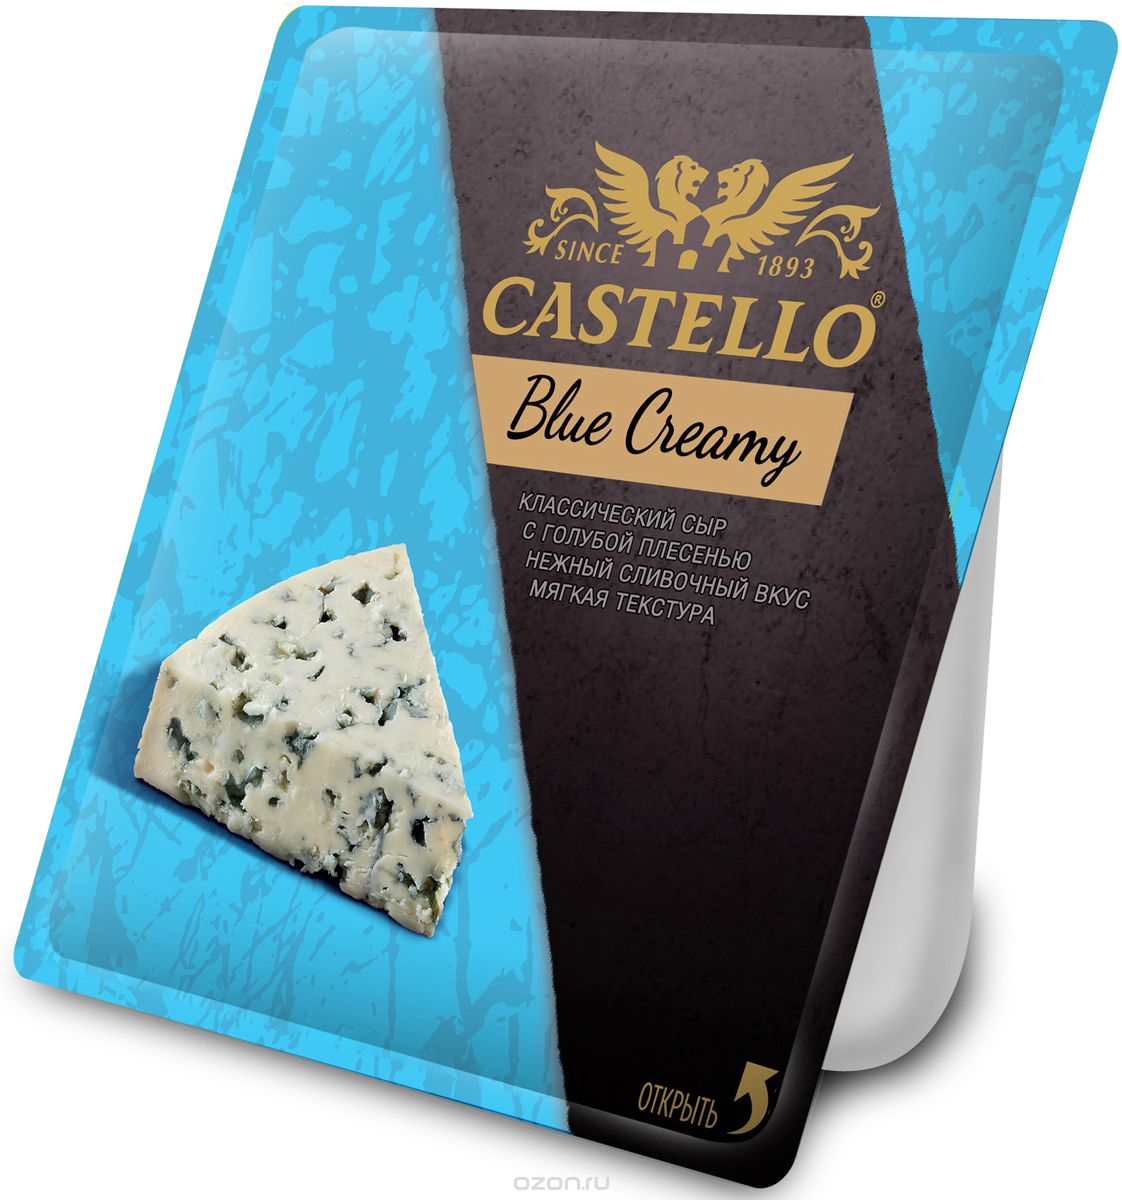 Castello Blue Creamy    , 56%, 125 